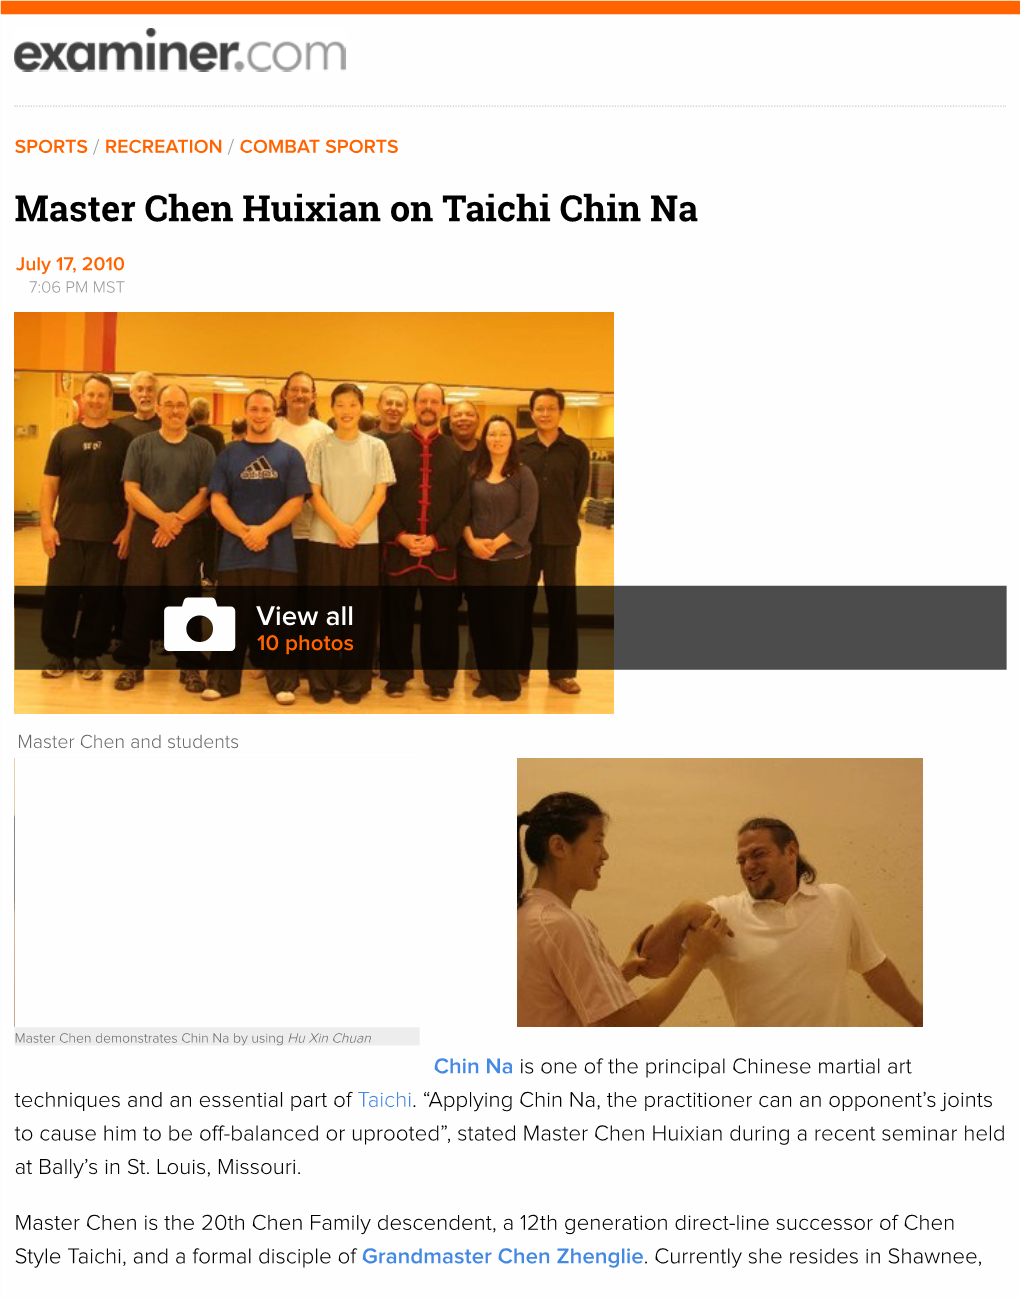 Master Chen Huixian on Taichi Chin Na